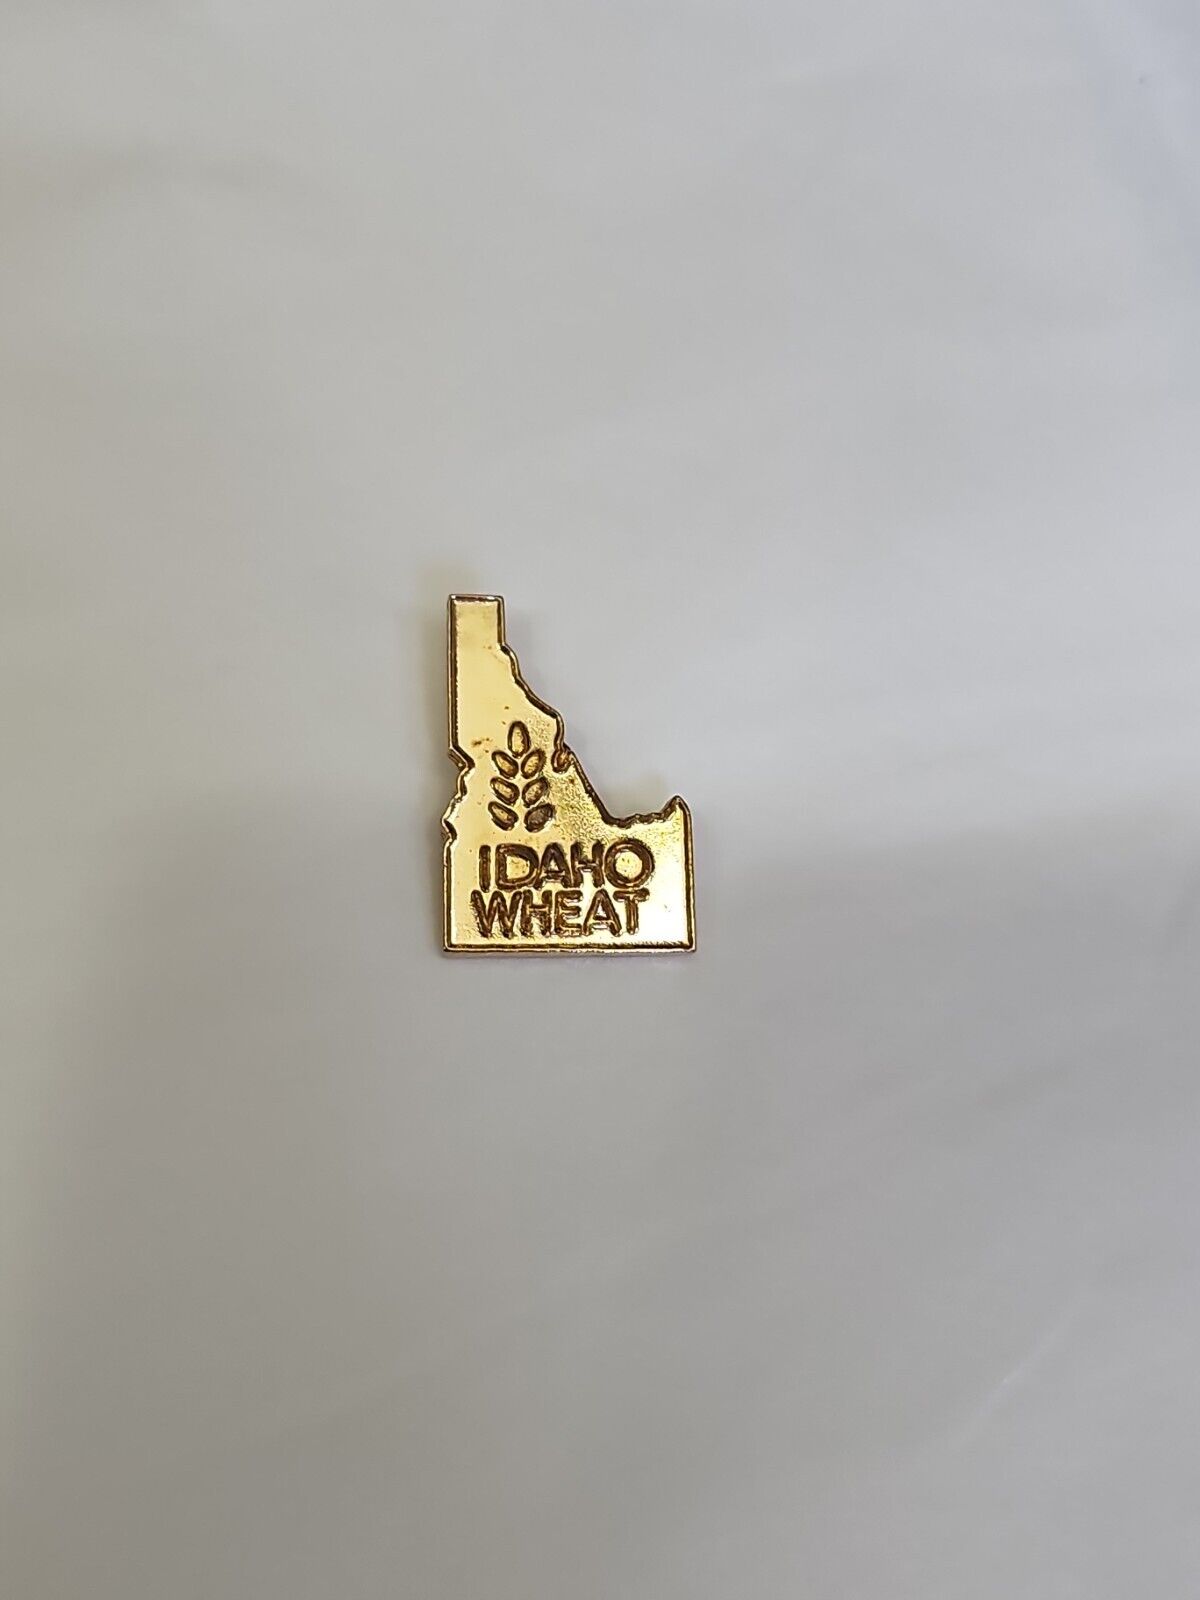 Idaho Wheat Lapel Hat Jacket Pin